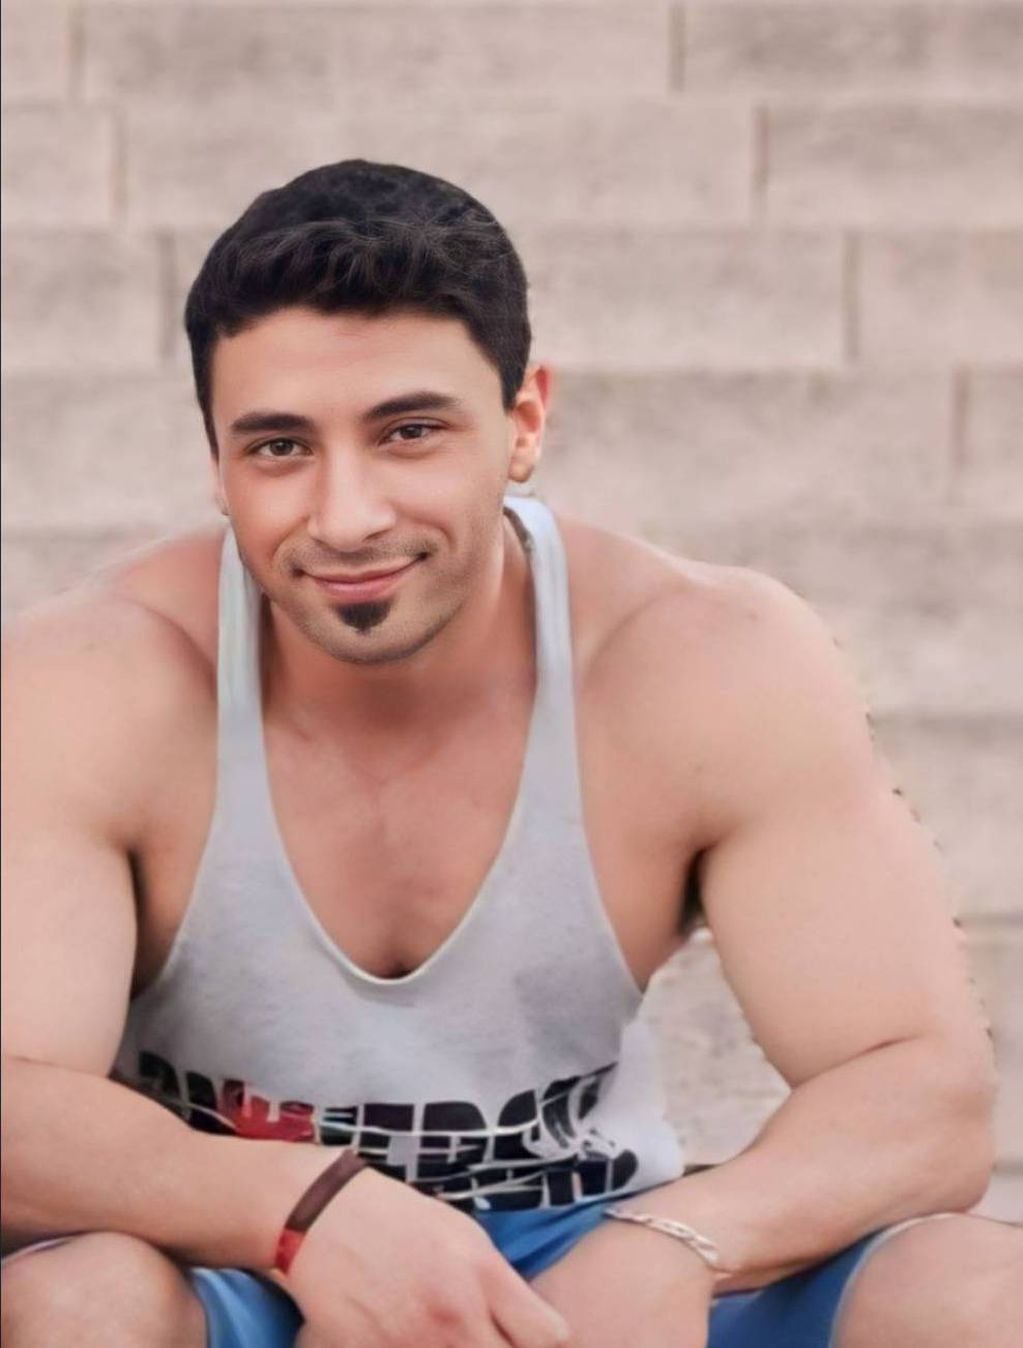 El colectivero Marcos Iván Daloia (39) falleció en Rosario tras un ataque a balazos sobre Mendoza y México, donde le dispararon mientras conducía un ómnibus de la línea K.